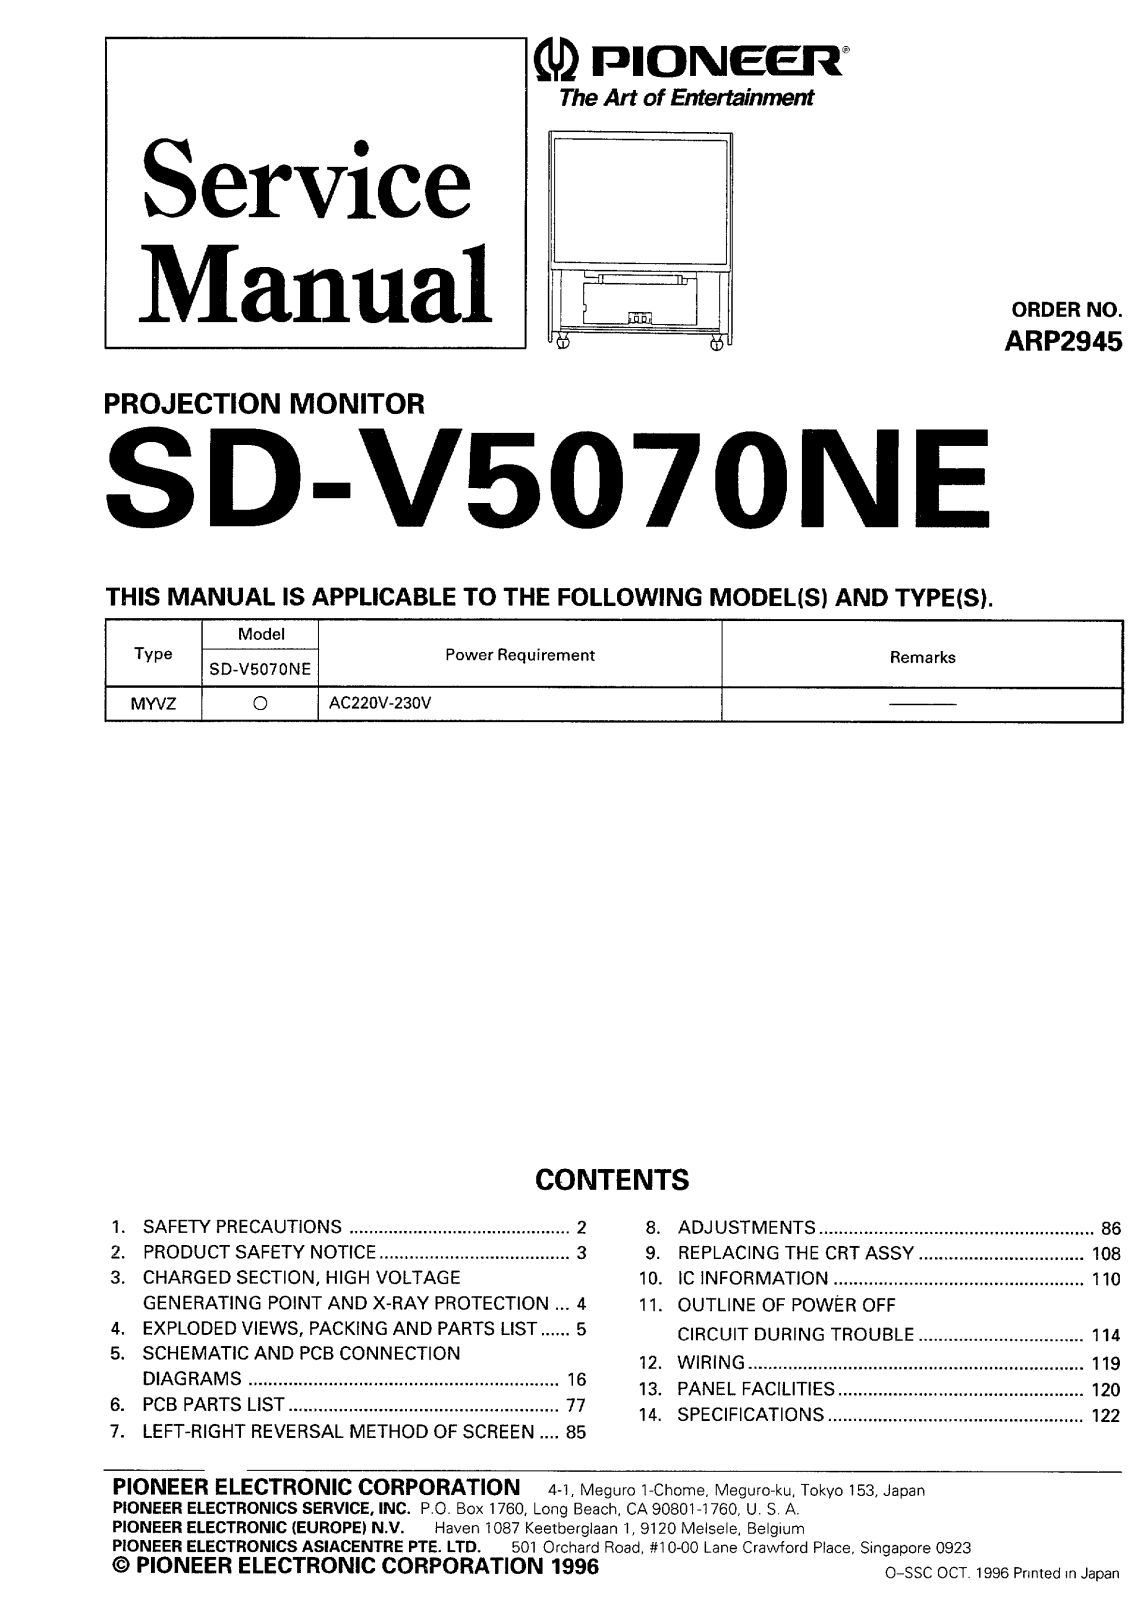 Pioneer SD-V5070NE Service Manual